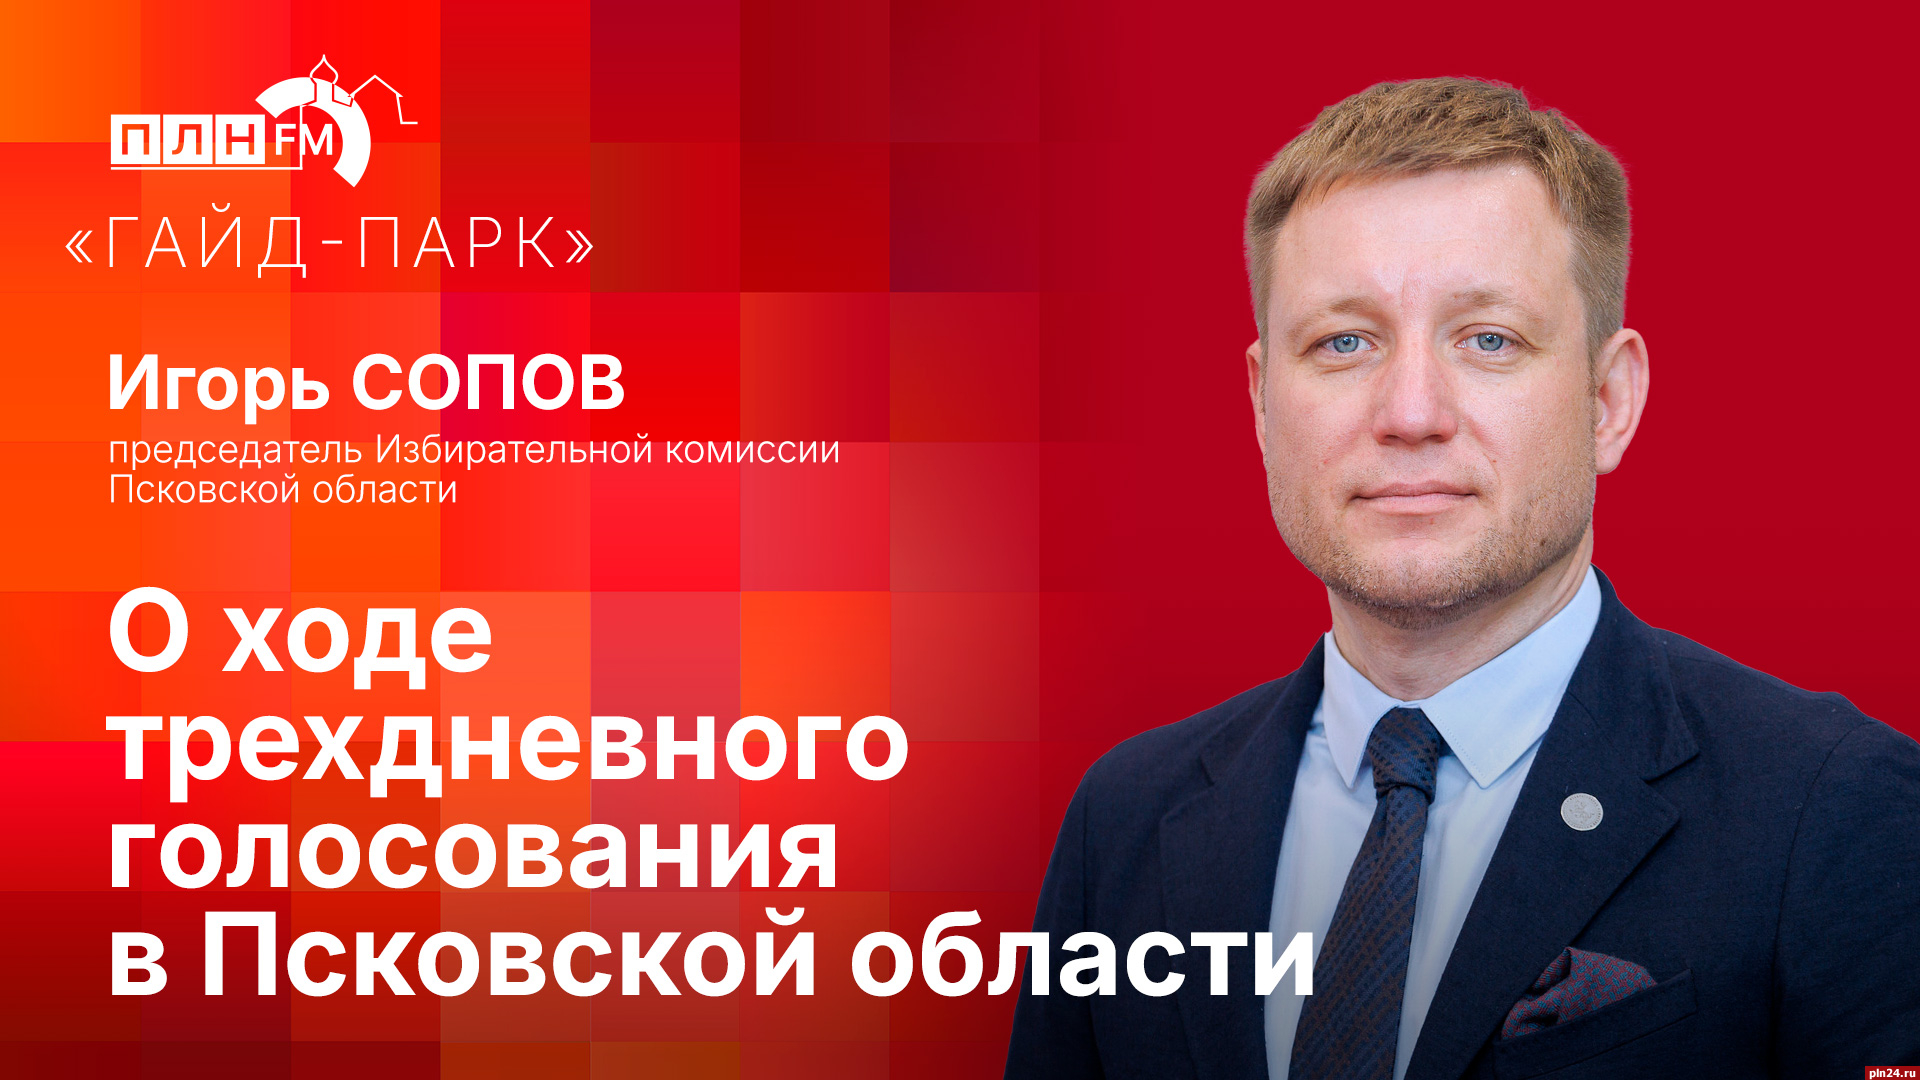 Начинается видеотрансляция программы «Гайд-парк»: Игорь Сопов о ходе трехдневного голосования в Псковской области